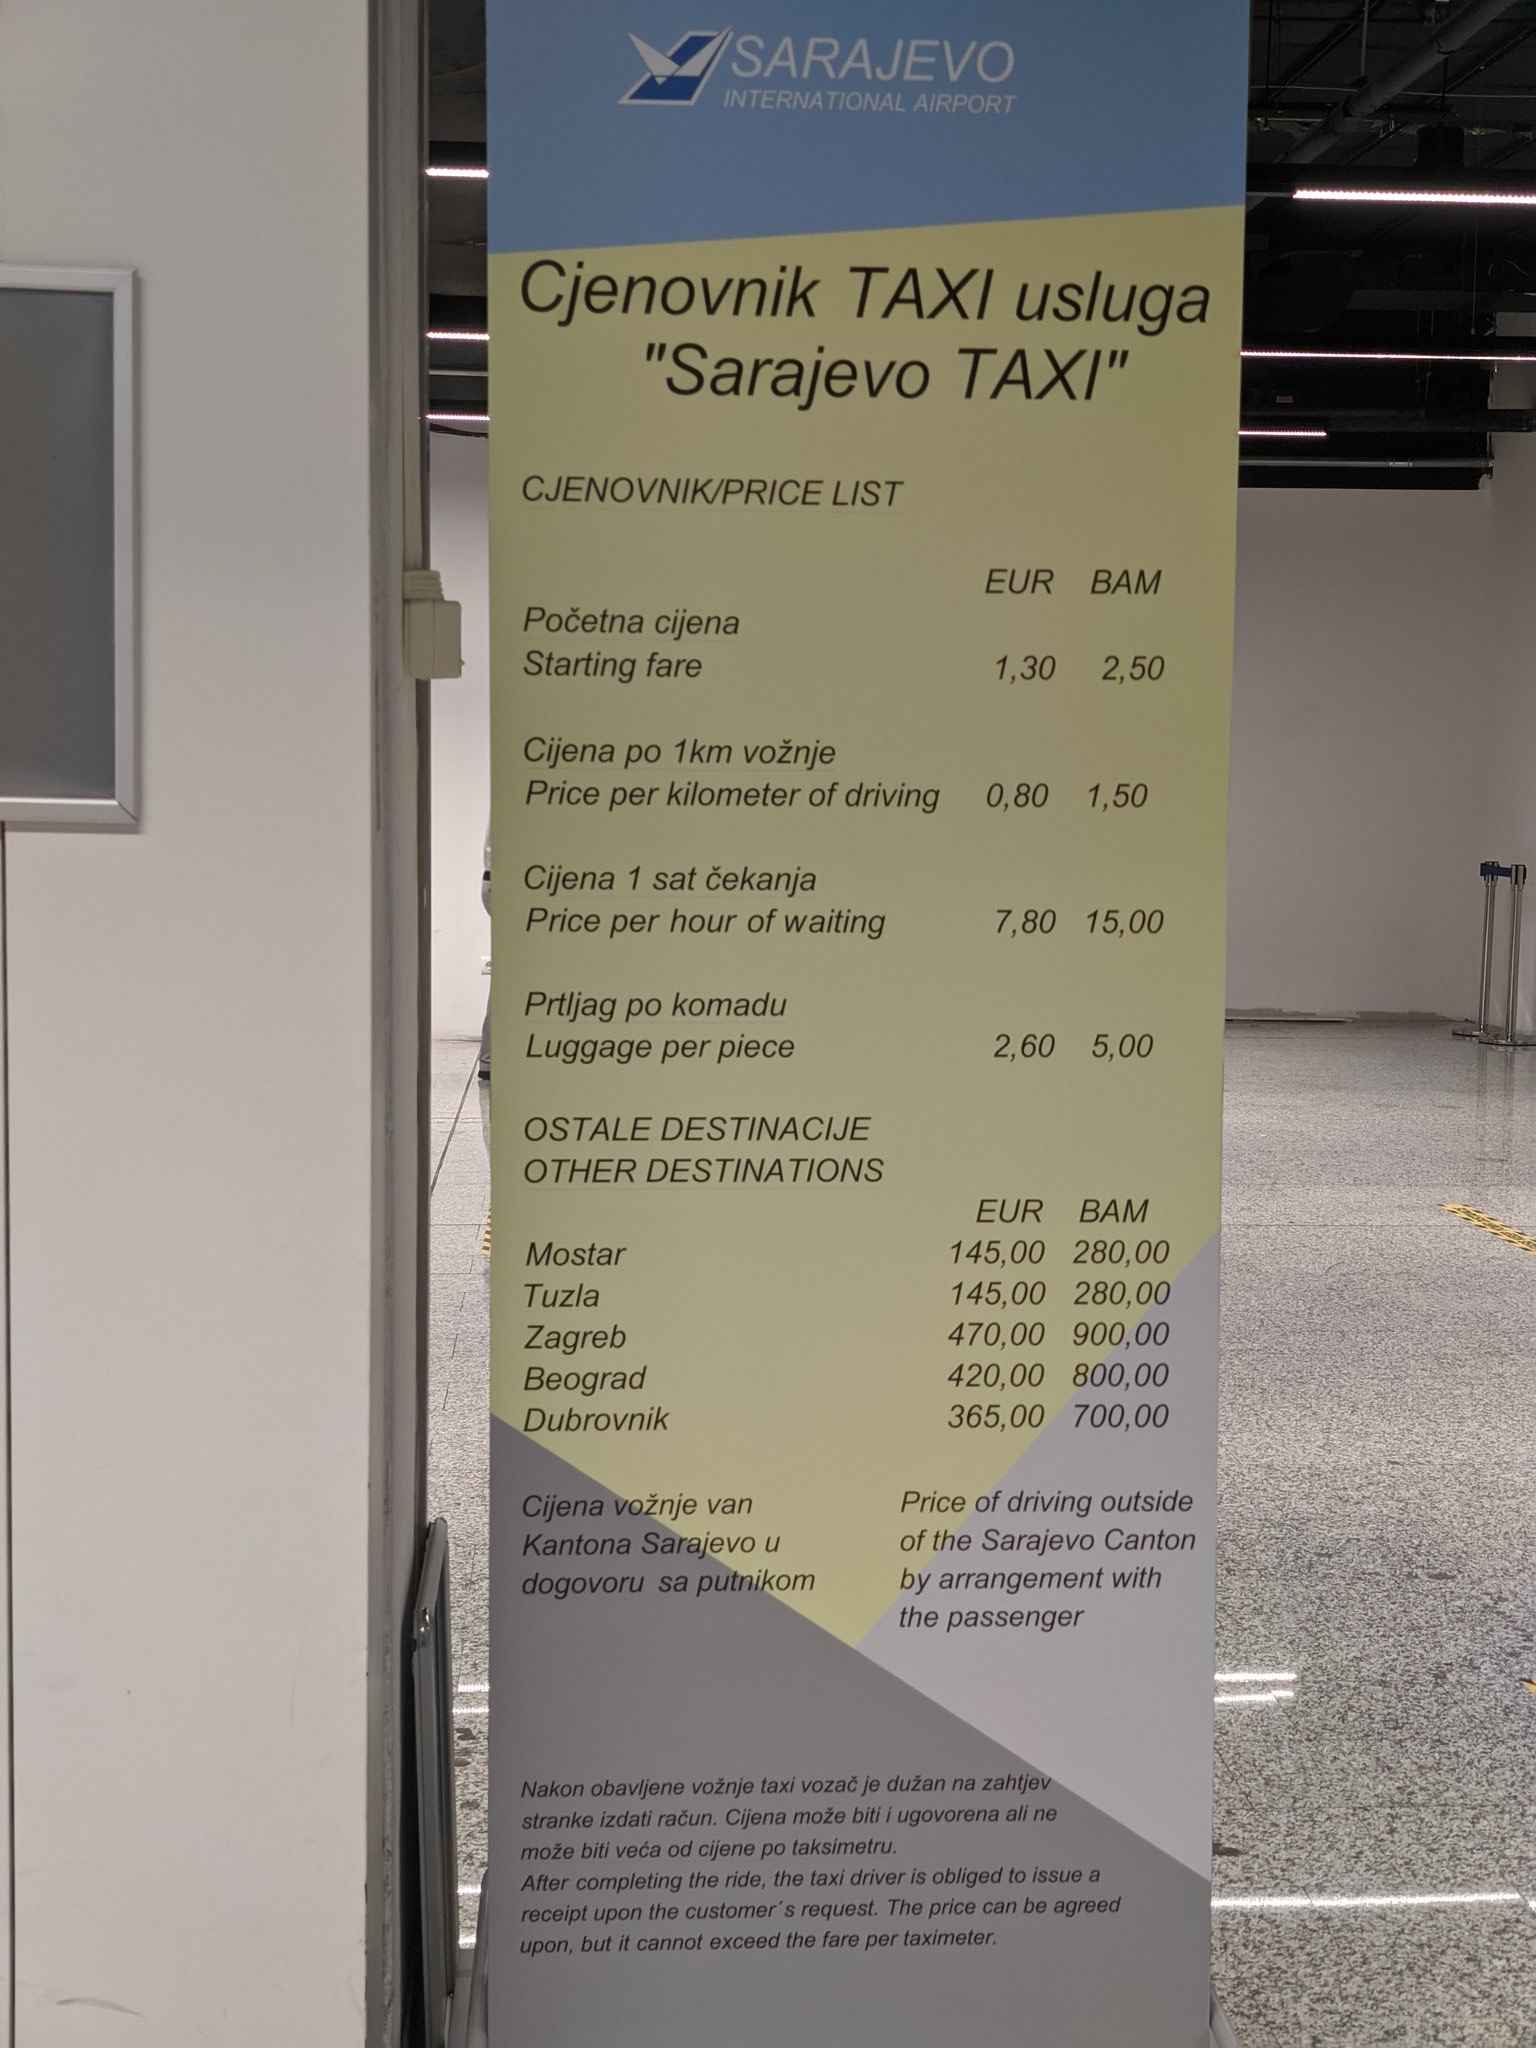 Cjenovnik za firmu 'Sarajevo Taxi' unutar Međunarodnog aerodroma Sarajevo